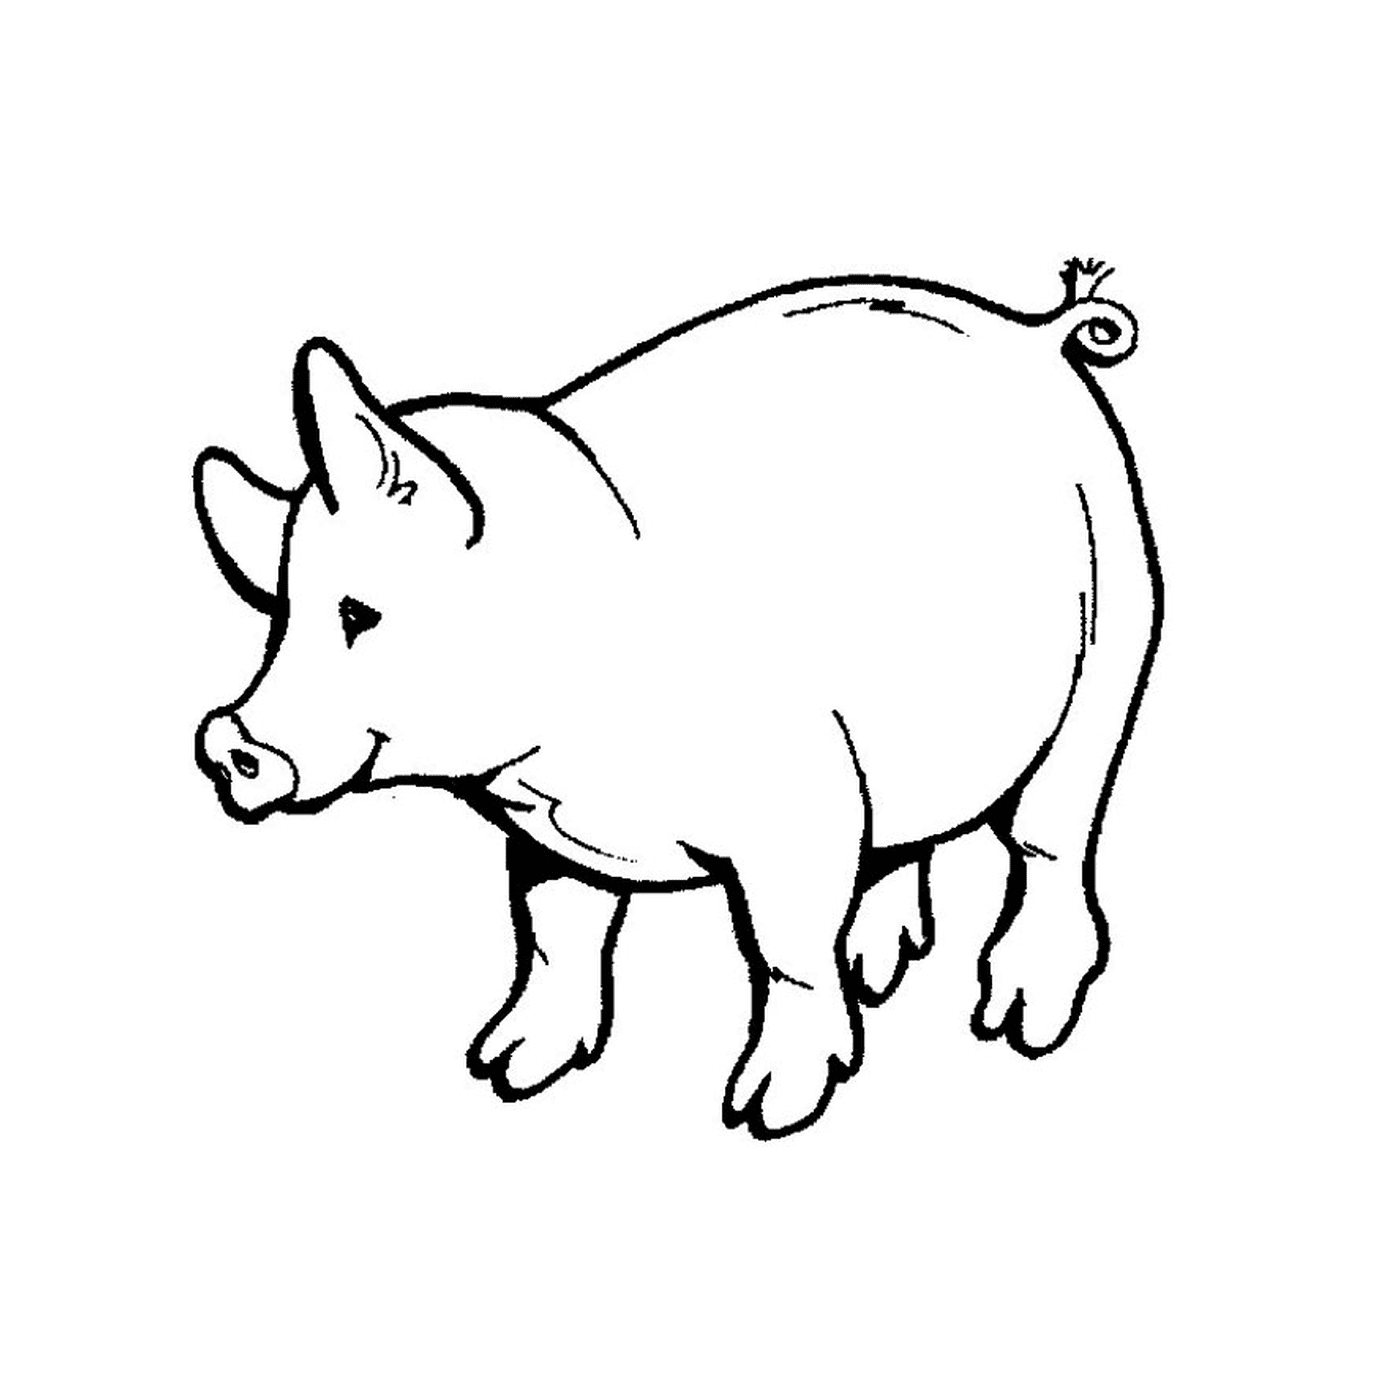  A pig 